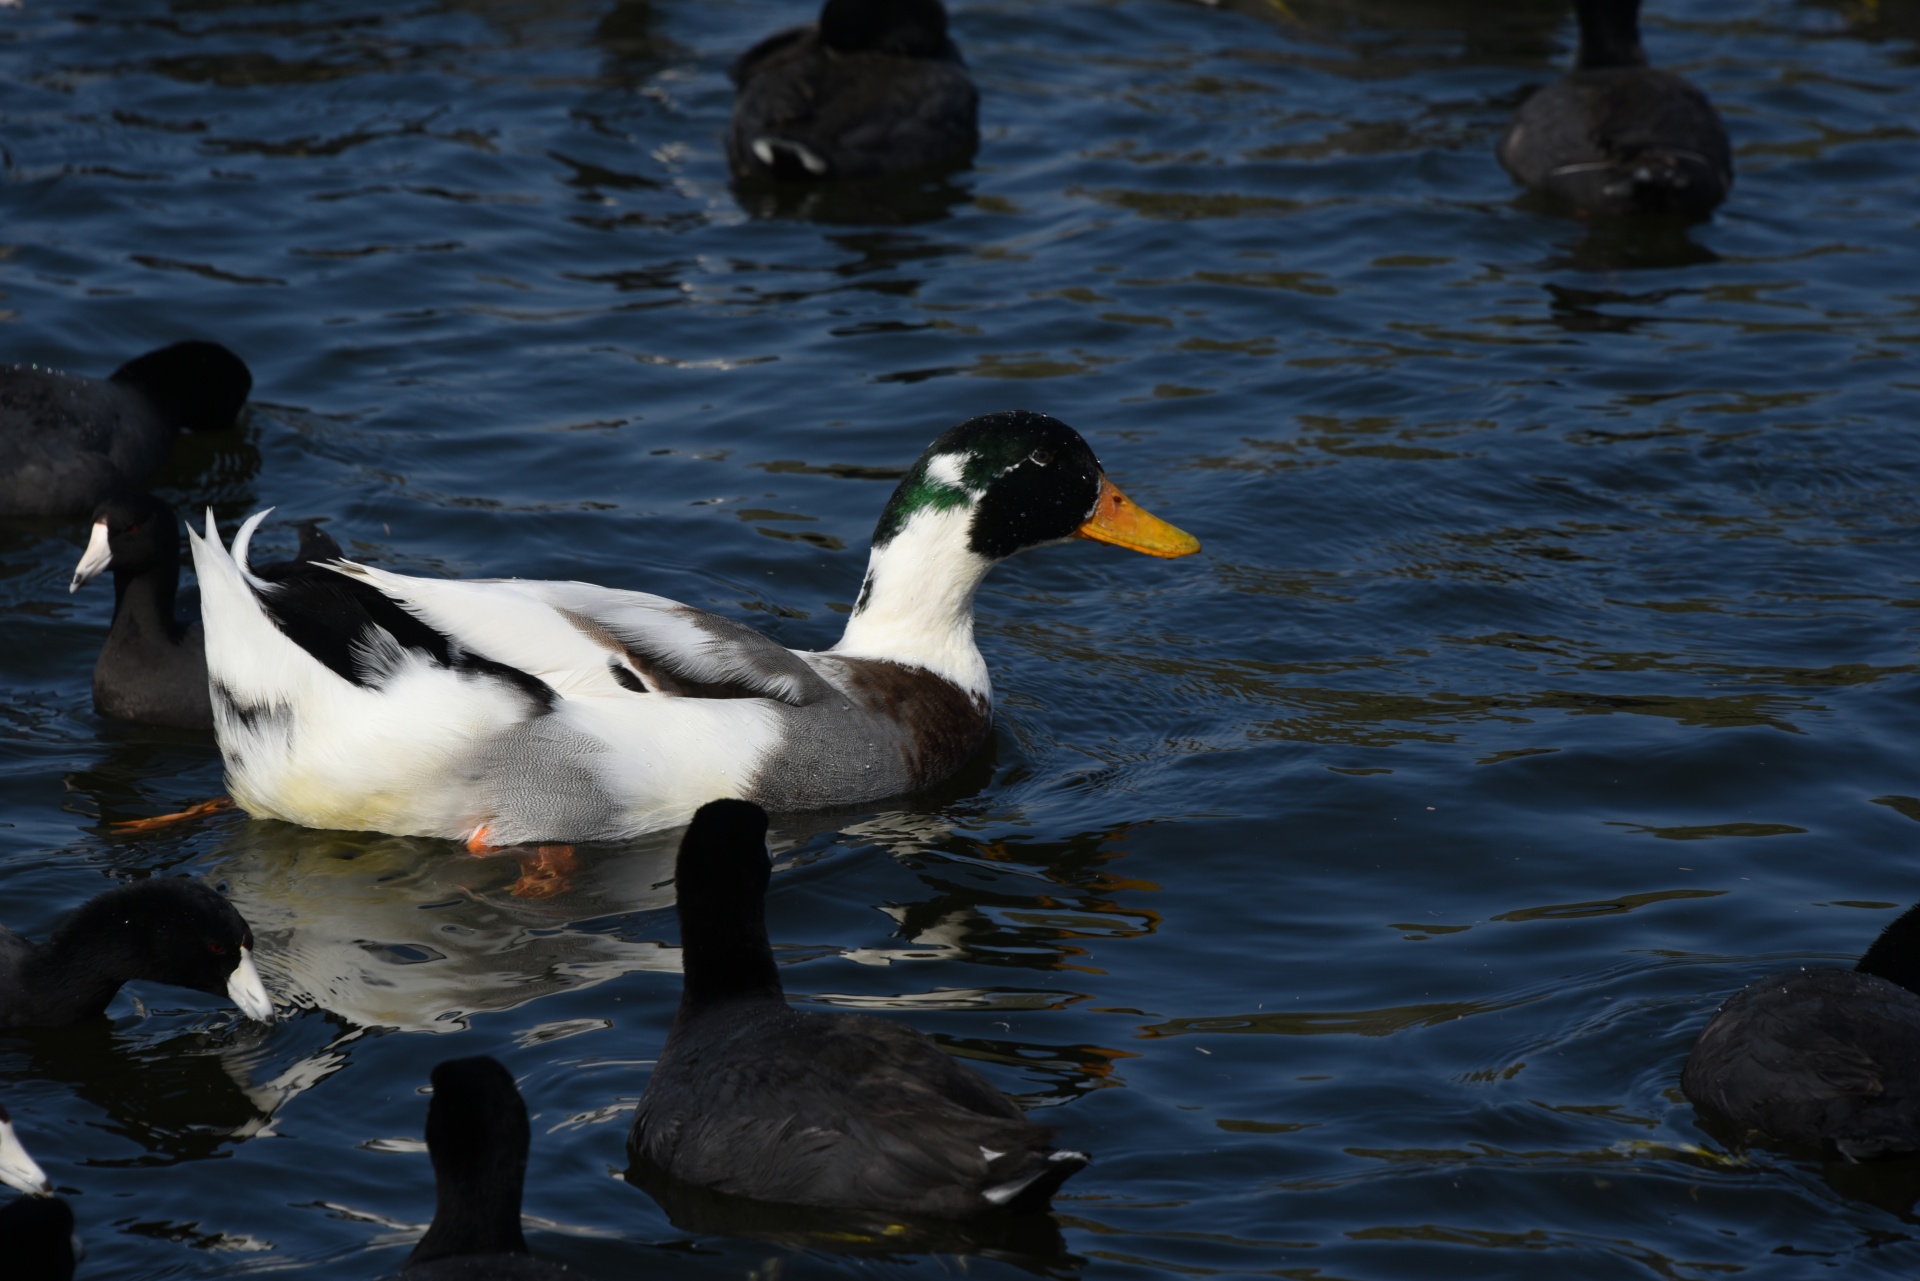 Mallard duck in white color